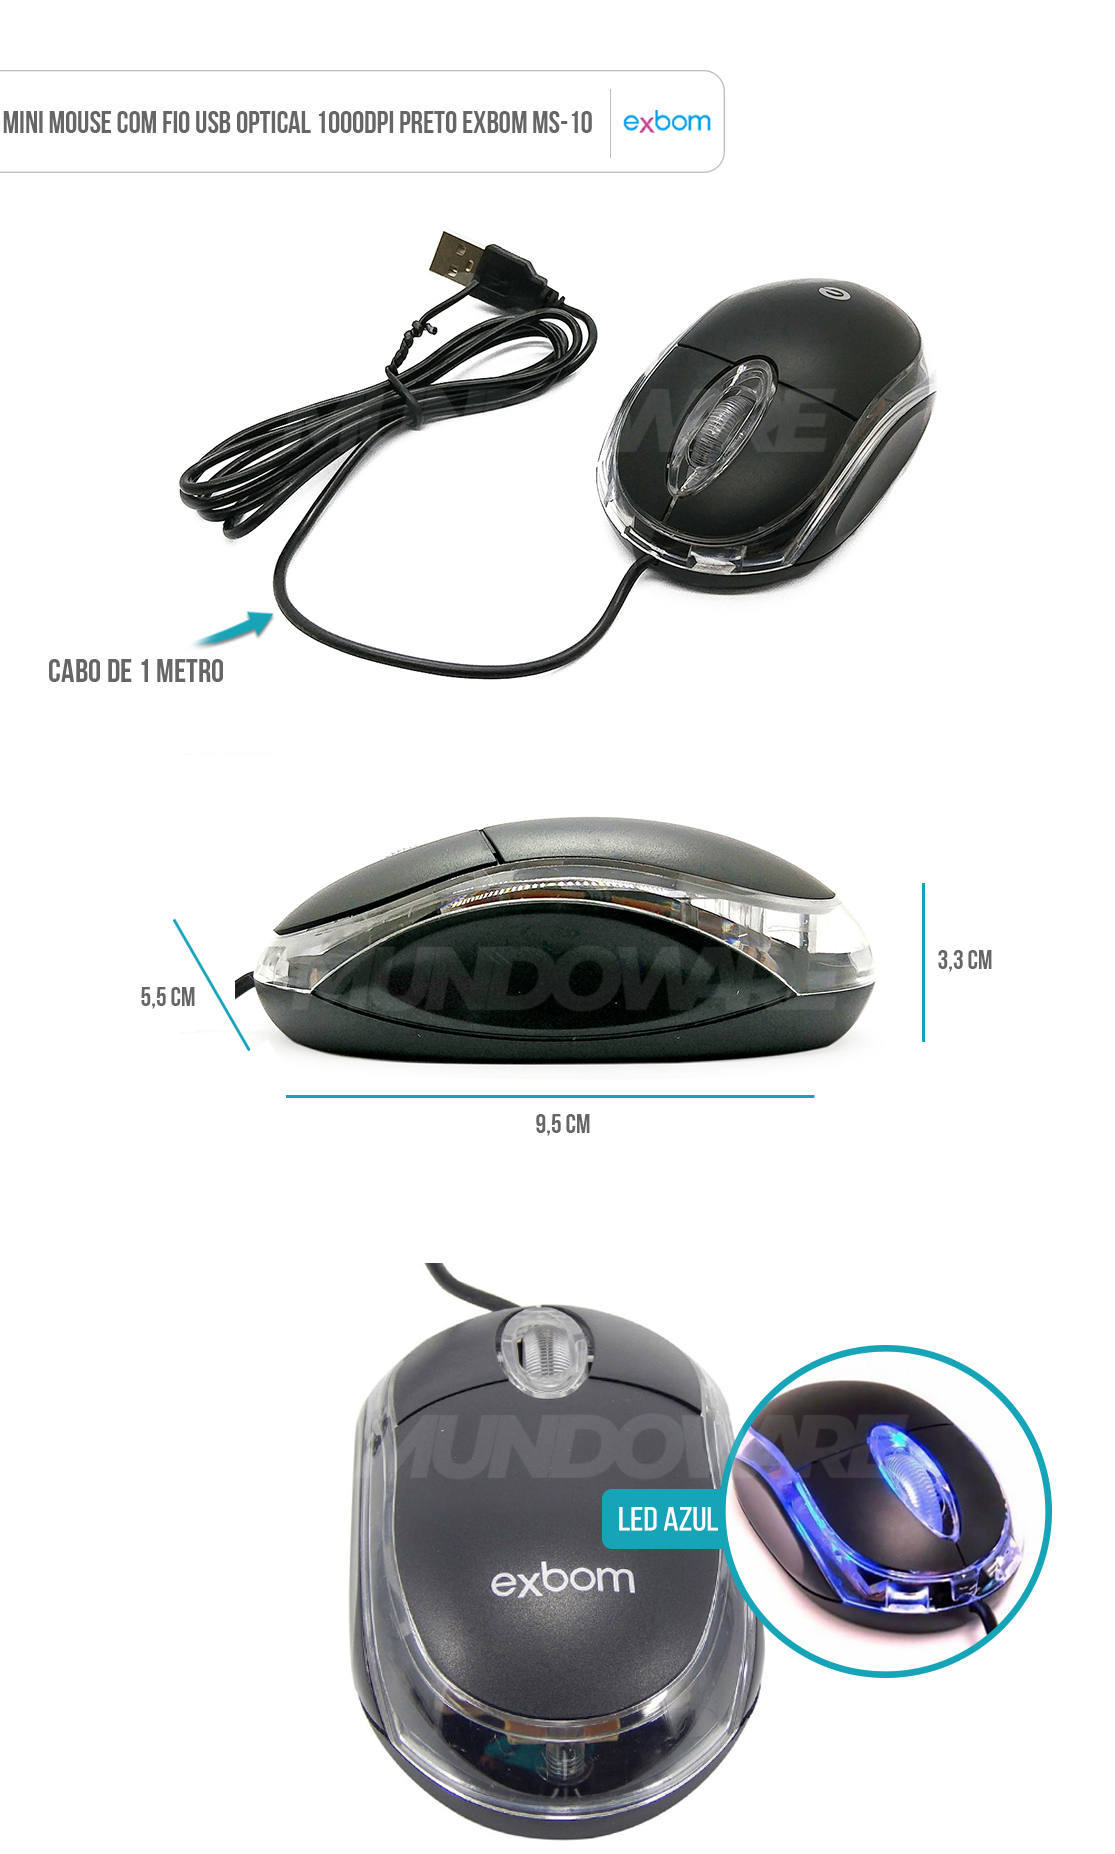 Mouse Pequeno Com Fio USB 1000dpi Óptico Borda Transparente com LED Exbom MS-10